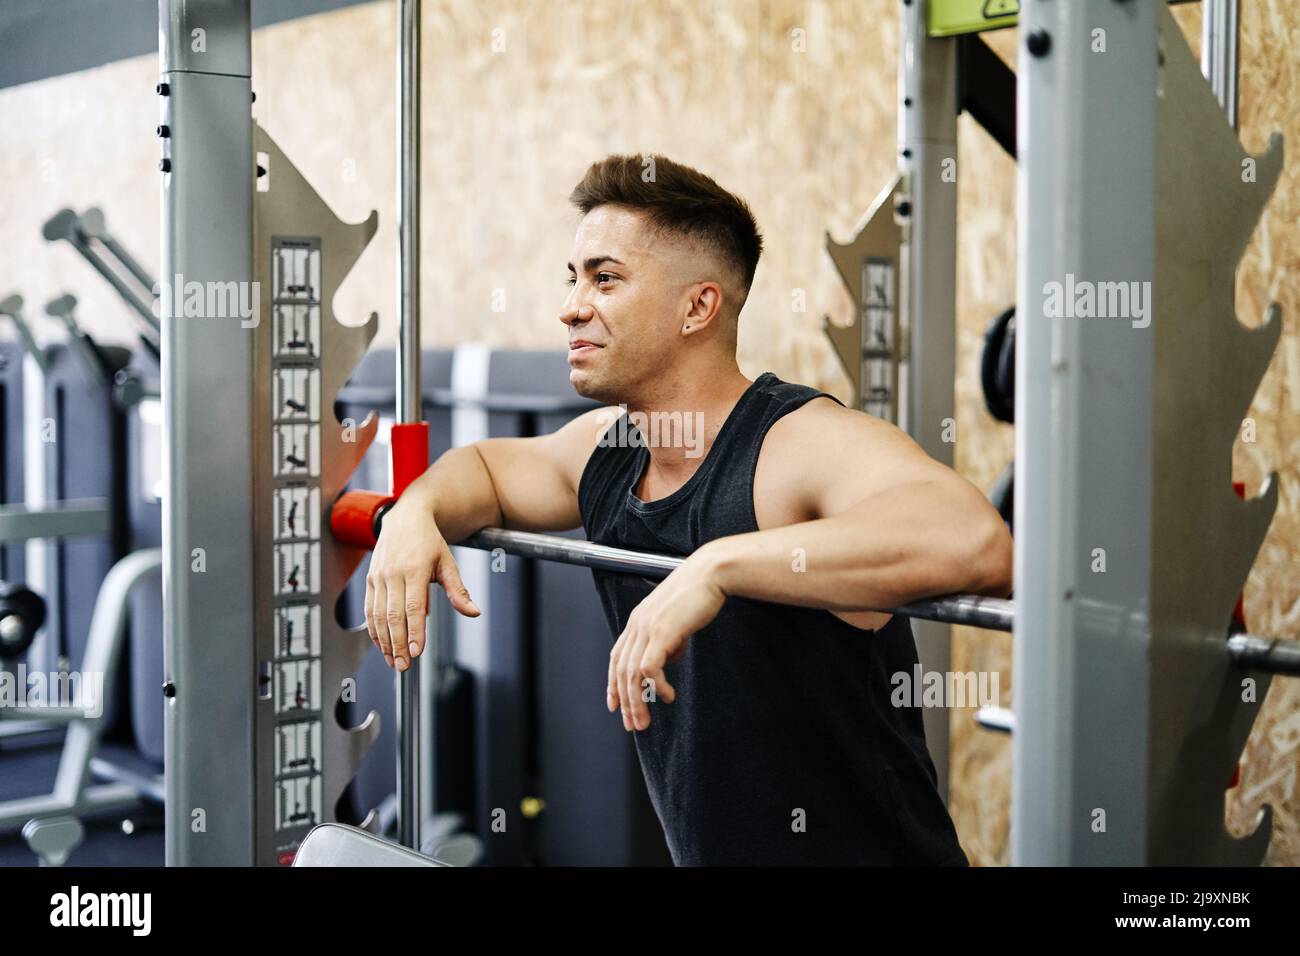 Junger Mann, der sich vom Anheben von Gewichten in einem griffigen Workout Gym erholt Stockfoto